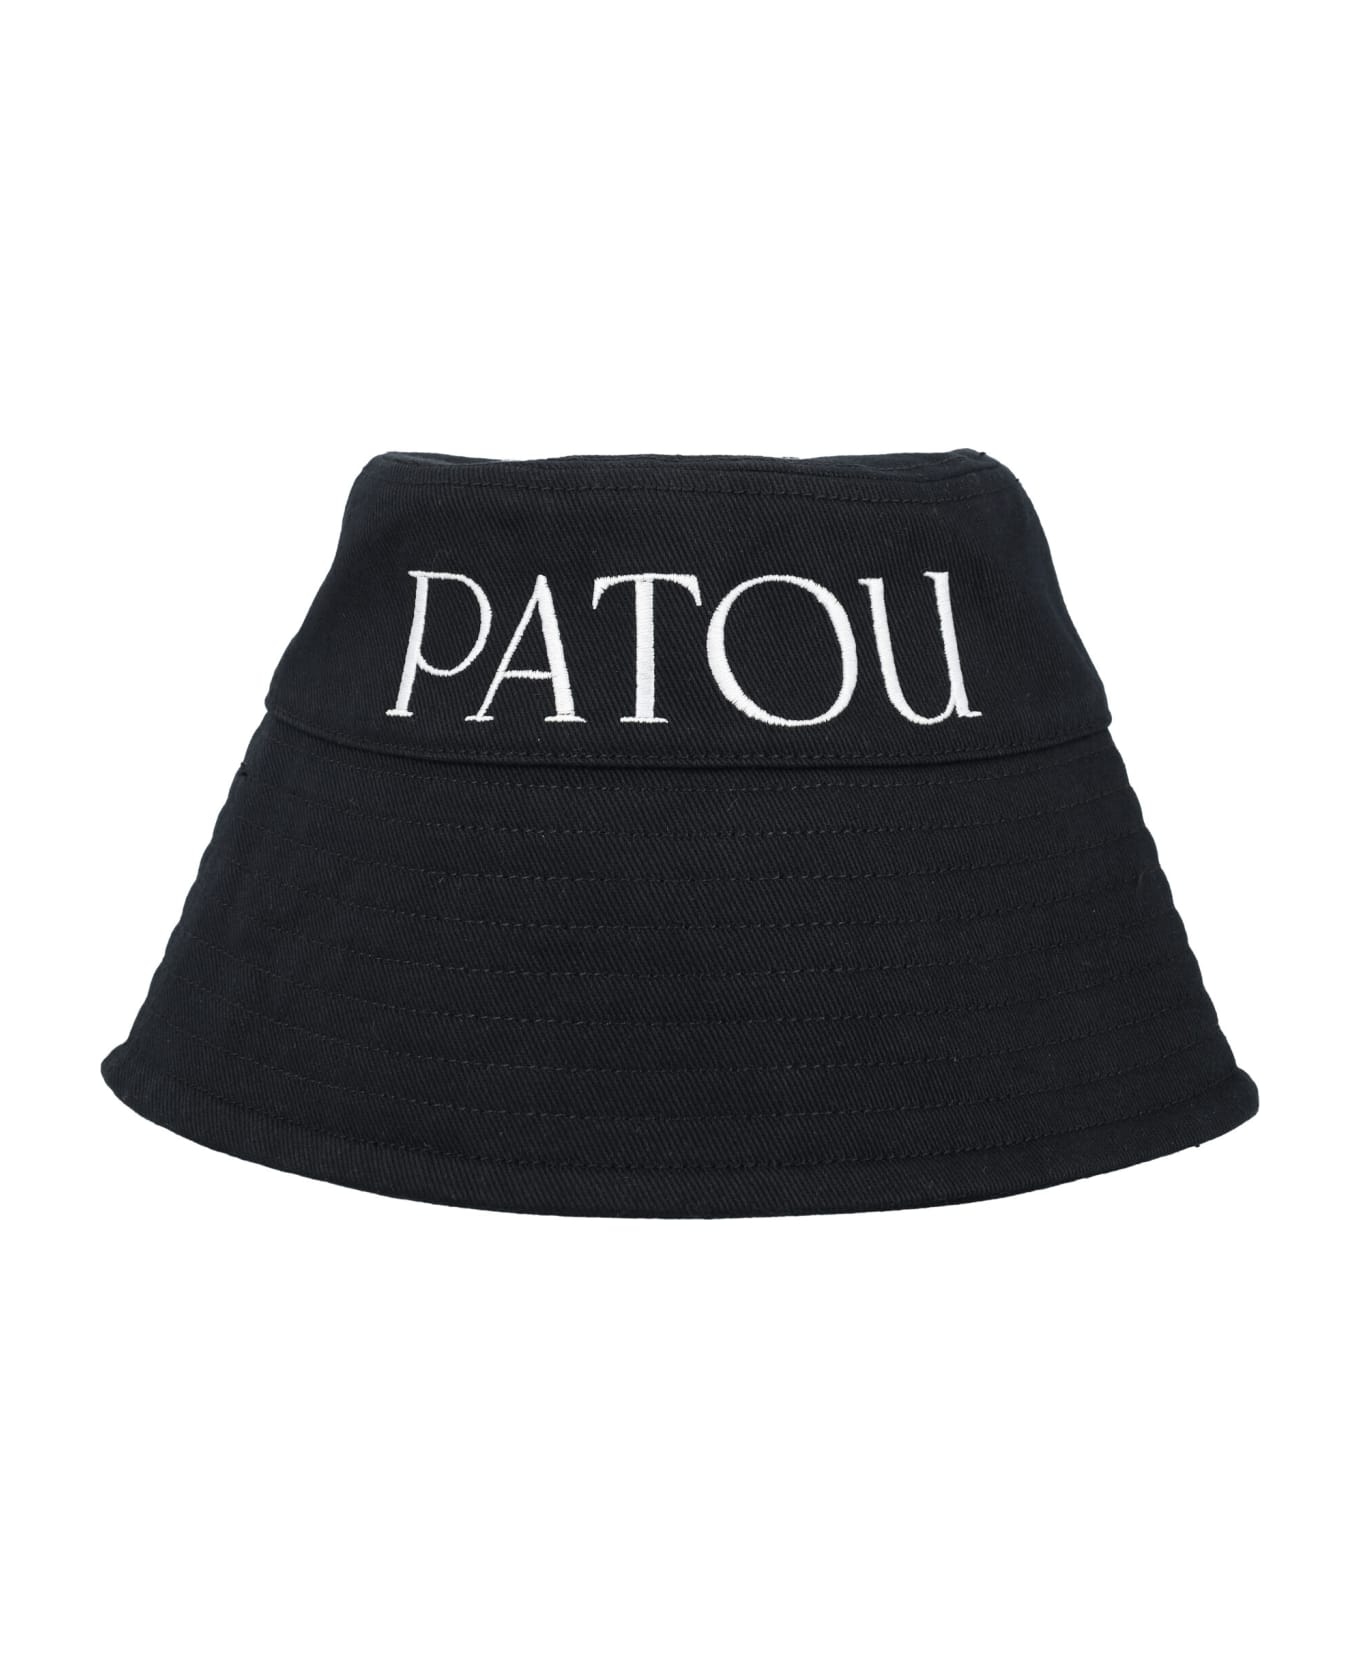 Patou Bucket Hat - 999B